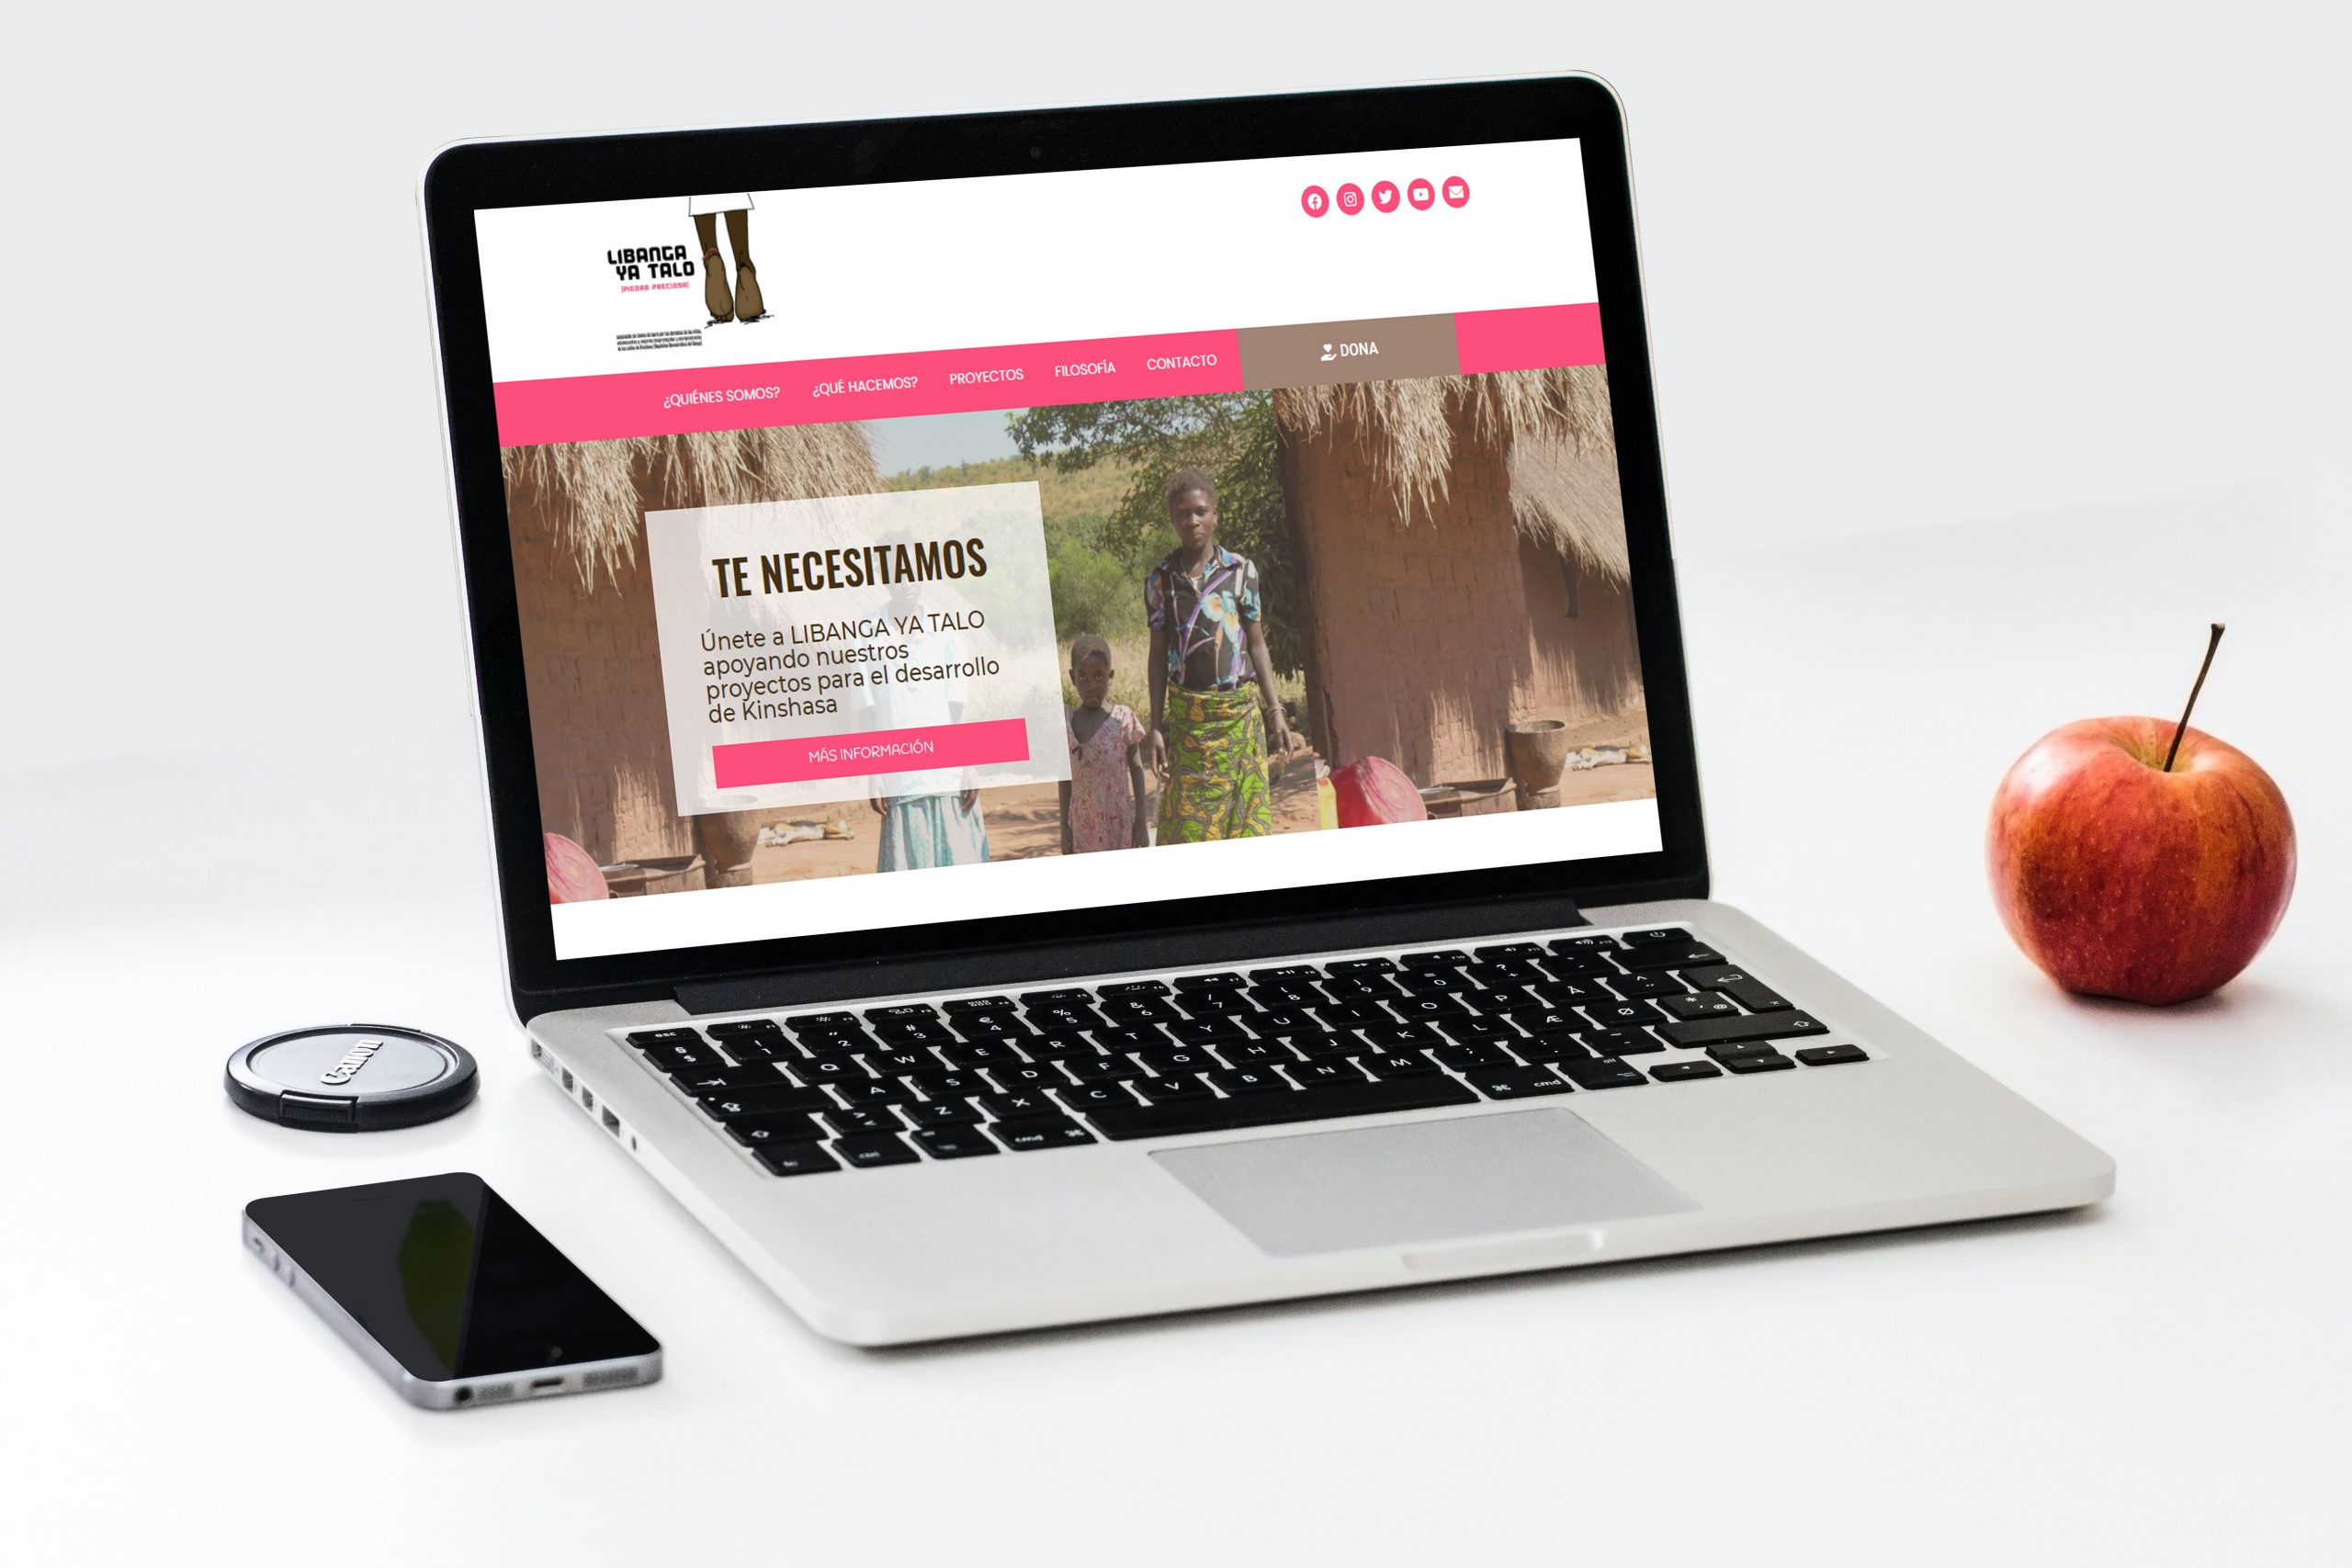 Libanga Ya Talo - Pagina Web desarrollada por Soporte Website - Diseño y desarrollo web - Portfolio de Soporte website